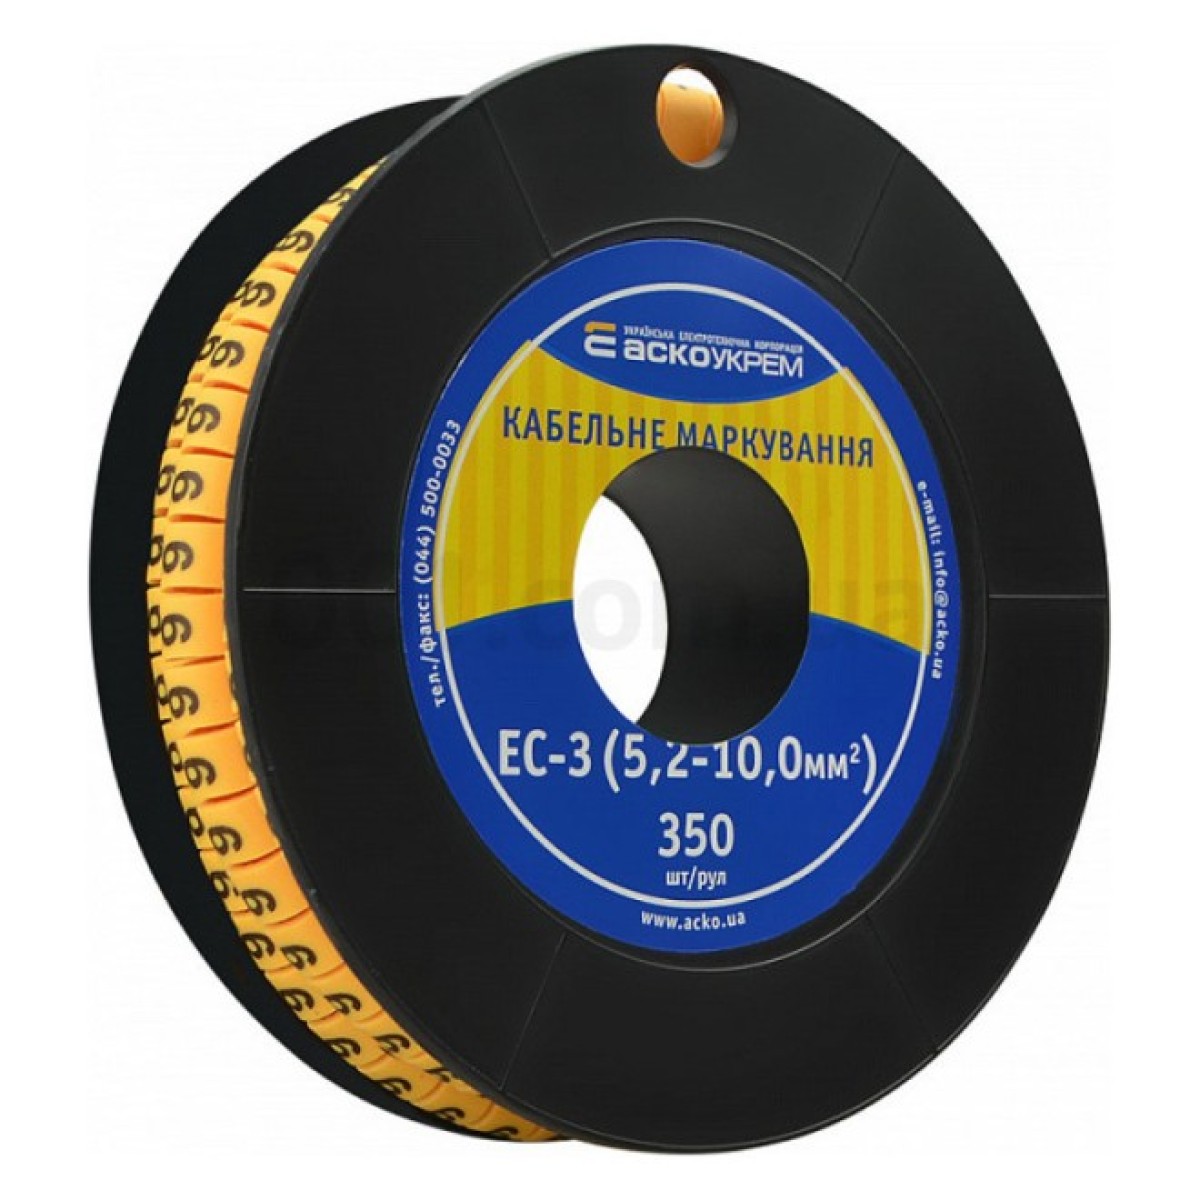 Маркування ЕС-3 для кабелю 5,2-10,0 мм² символ «9» (рулон 250 шт.), АСКО-УКРЕМ 256_256.jpg